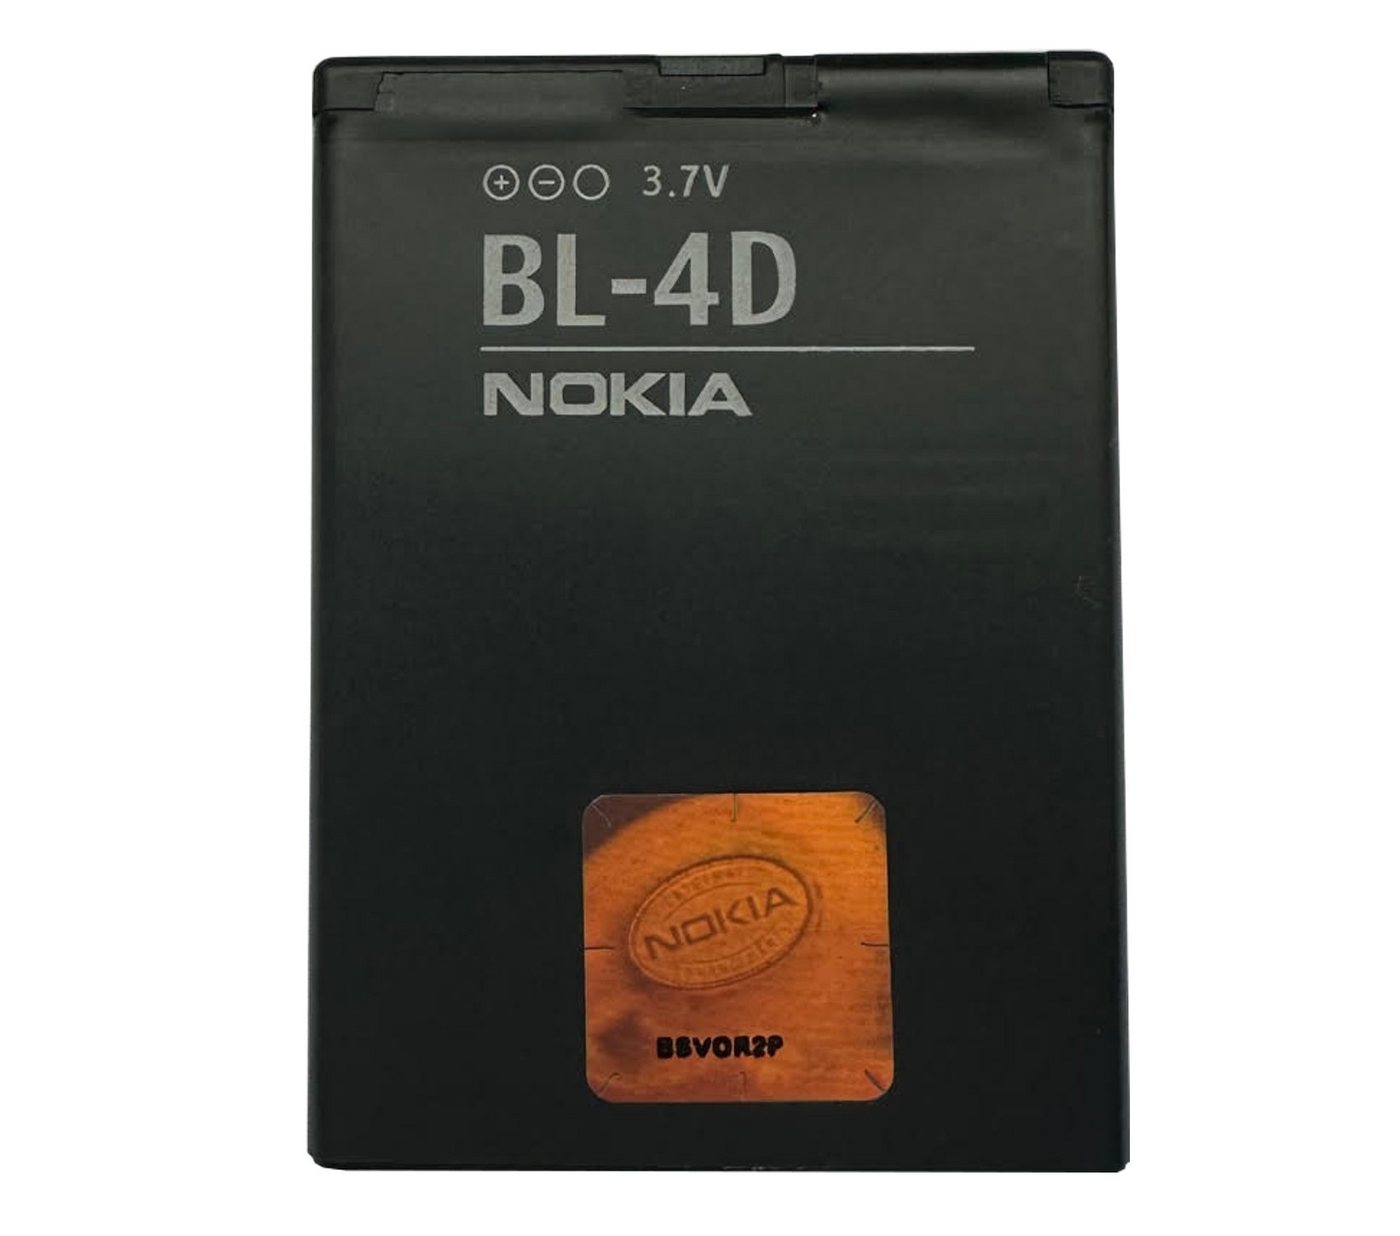 Nokia Original Nokia BL-4D Akku 1200 mAh Nokia E5 E7-00 N8 N97 Handy-Akku Nokia BL-4D 1200 mAh (3,7 V), Schnelles und effizientes Laden, Li-Ionen Zellen, Überladungsschutz von Nokia